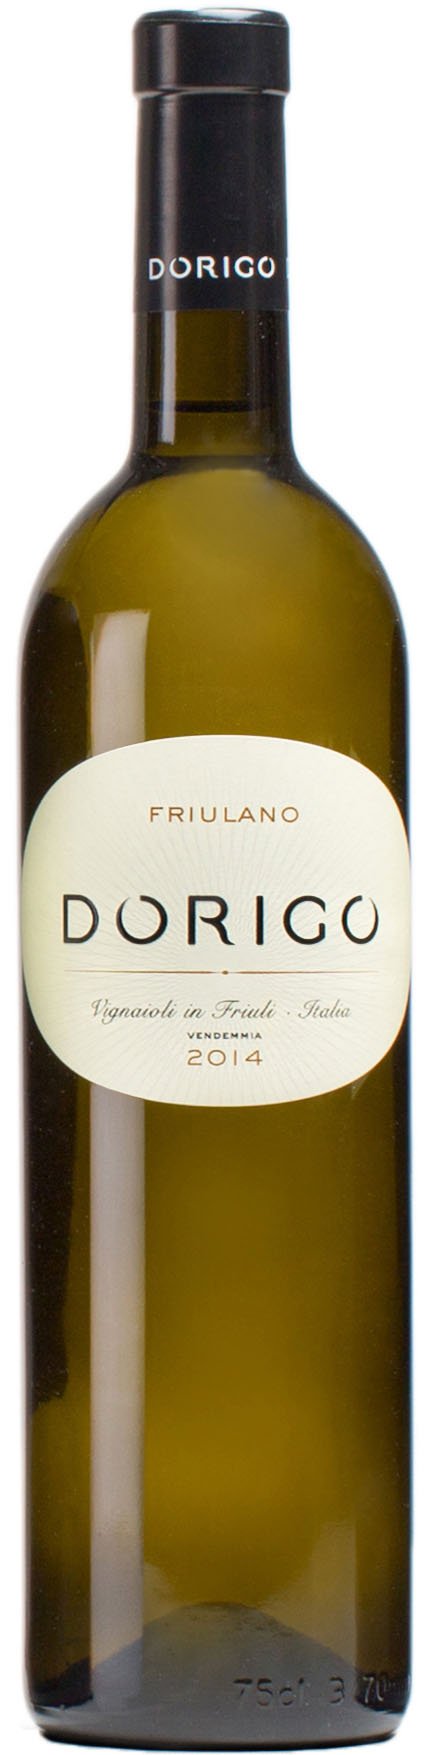 Dorigo Friulano 2016